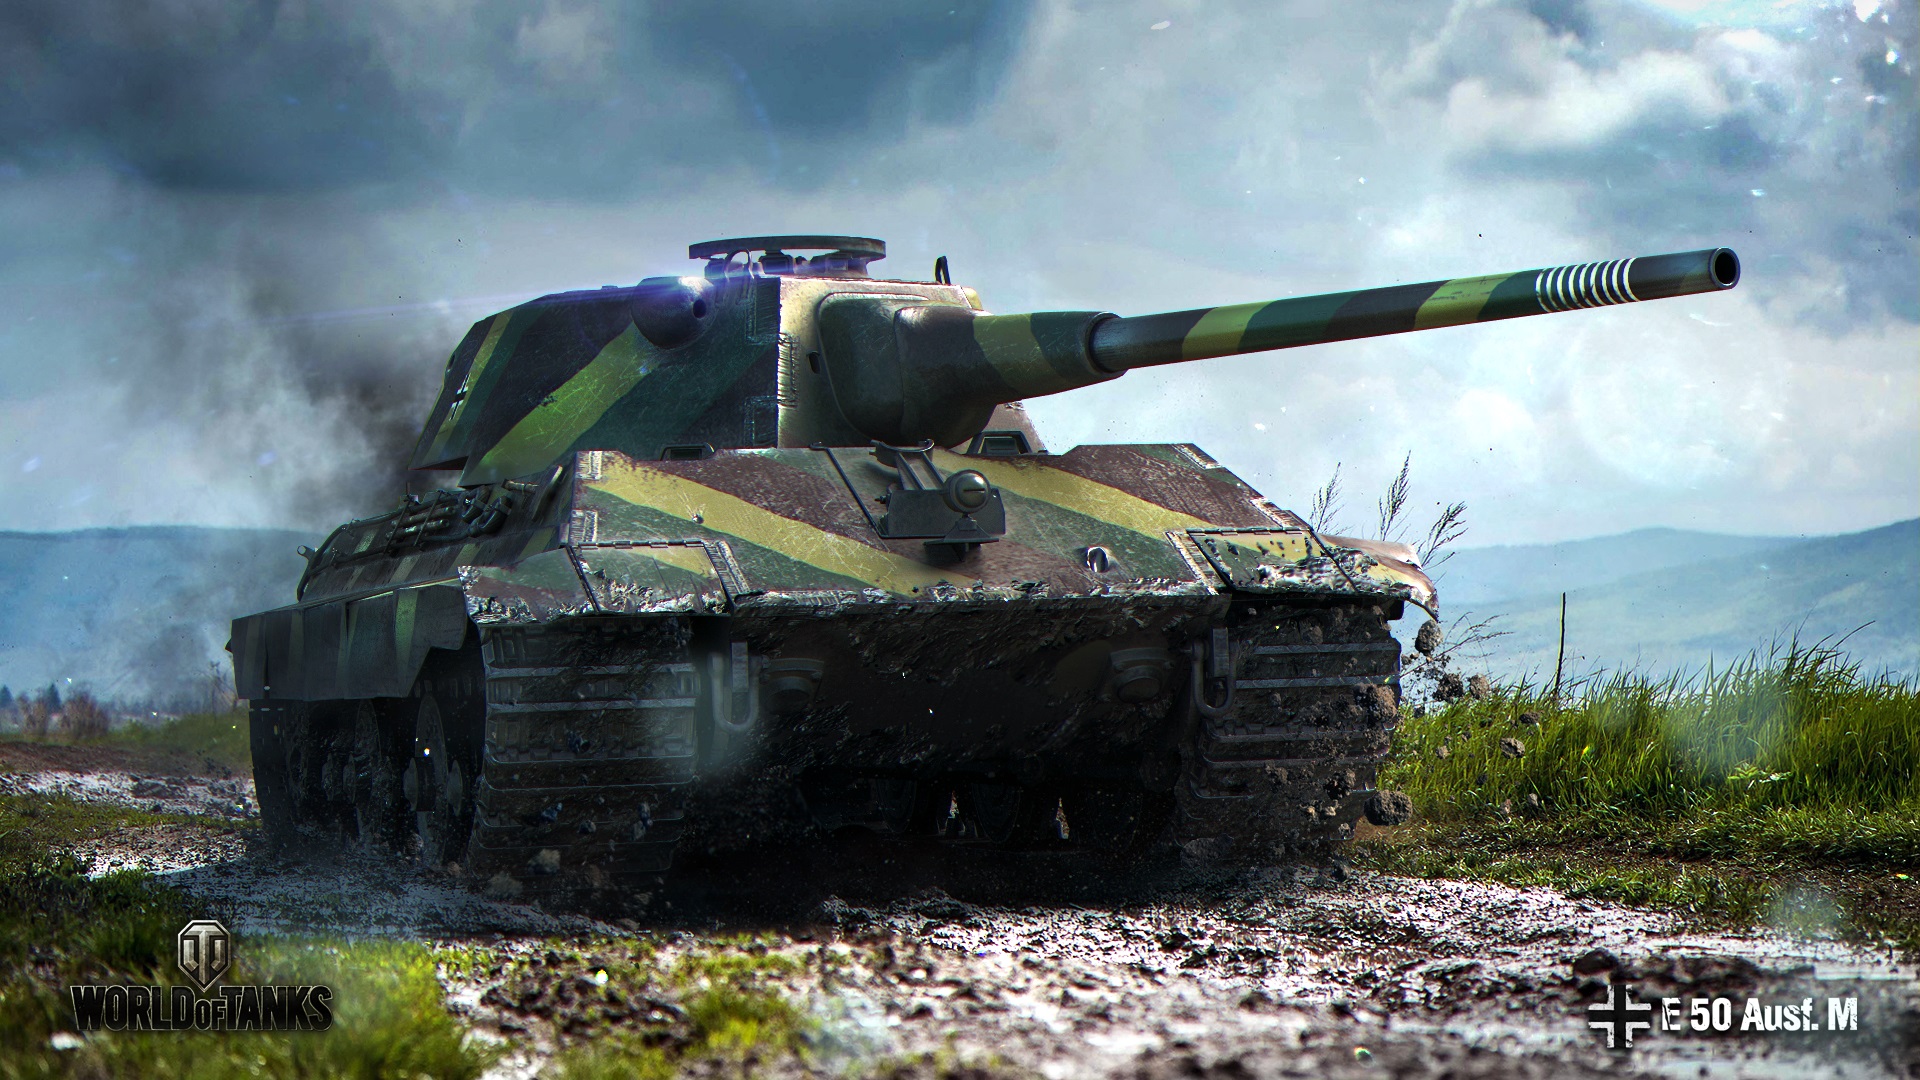 百夫长坦克所有改进型号和真实的装甲厚度 - 哔哩哔哩